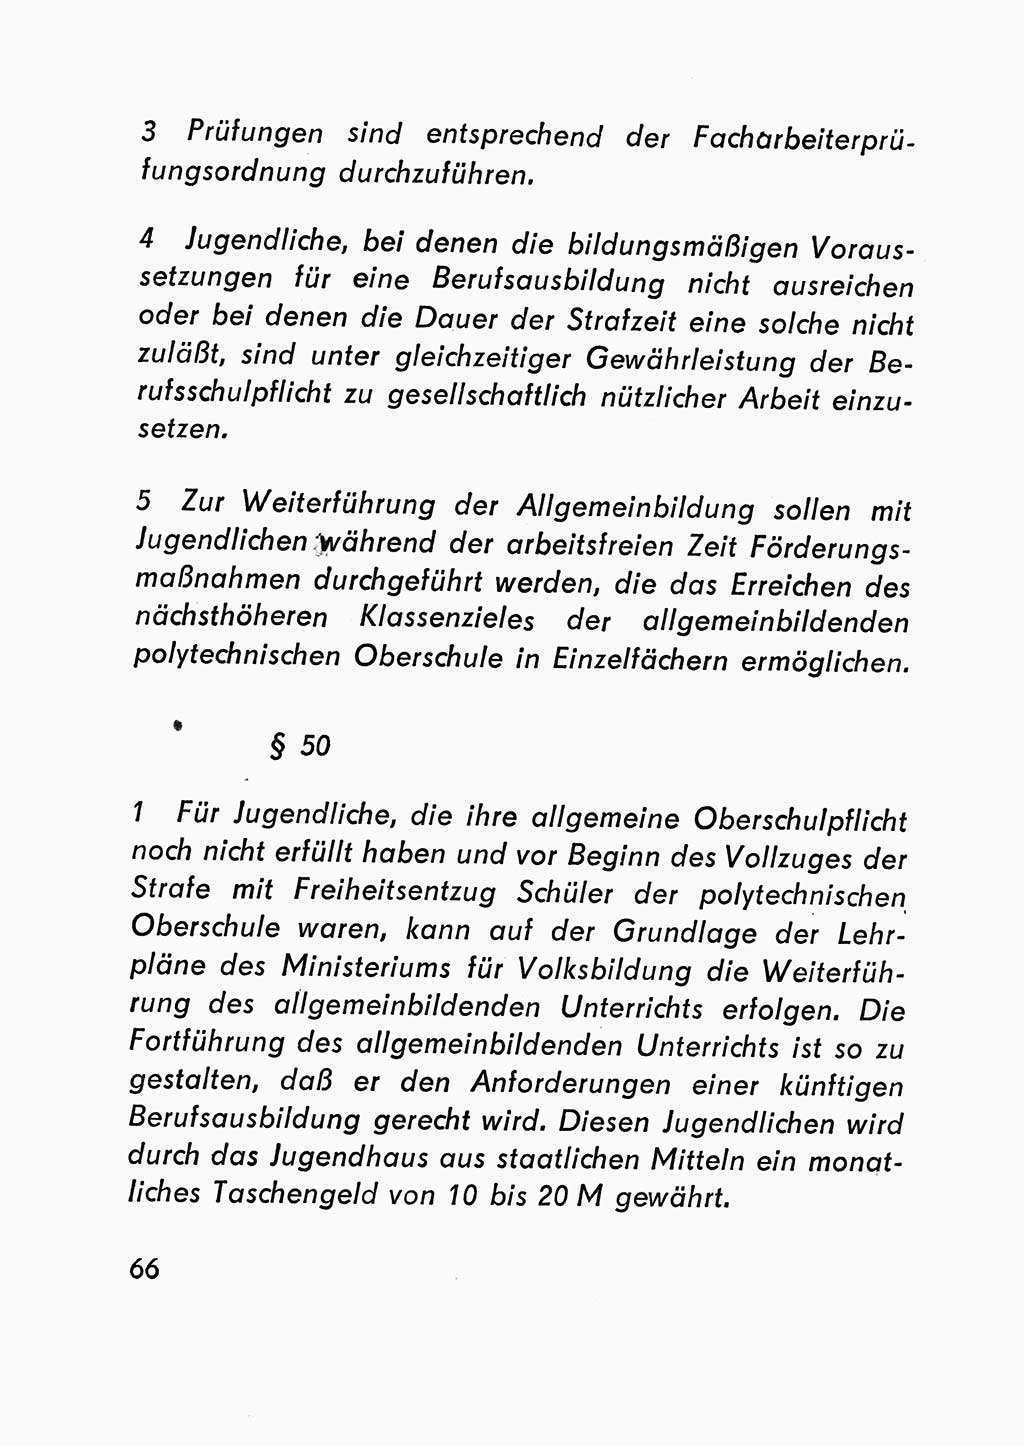 Gesetz über den Vollzug der Strafen mit Freiheitsentzug (Strafvollzugsgesetz) - StVG - [Deutsche Demokratische Republik (DDR)] 1977, Seite 66 (StVG DDR 1977, S. 66)